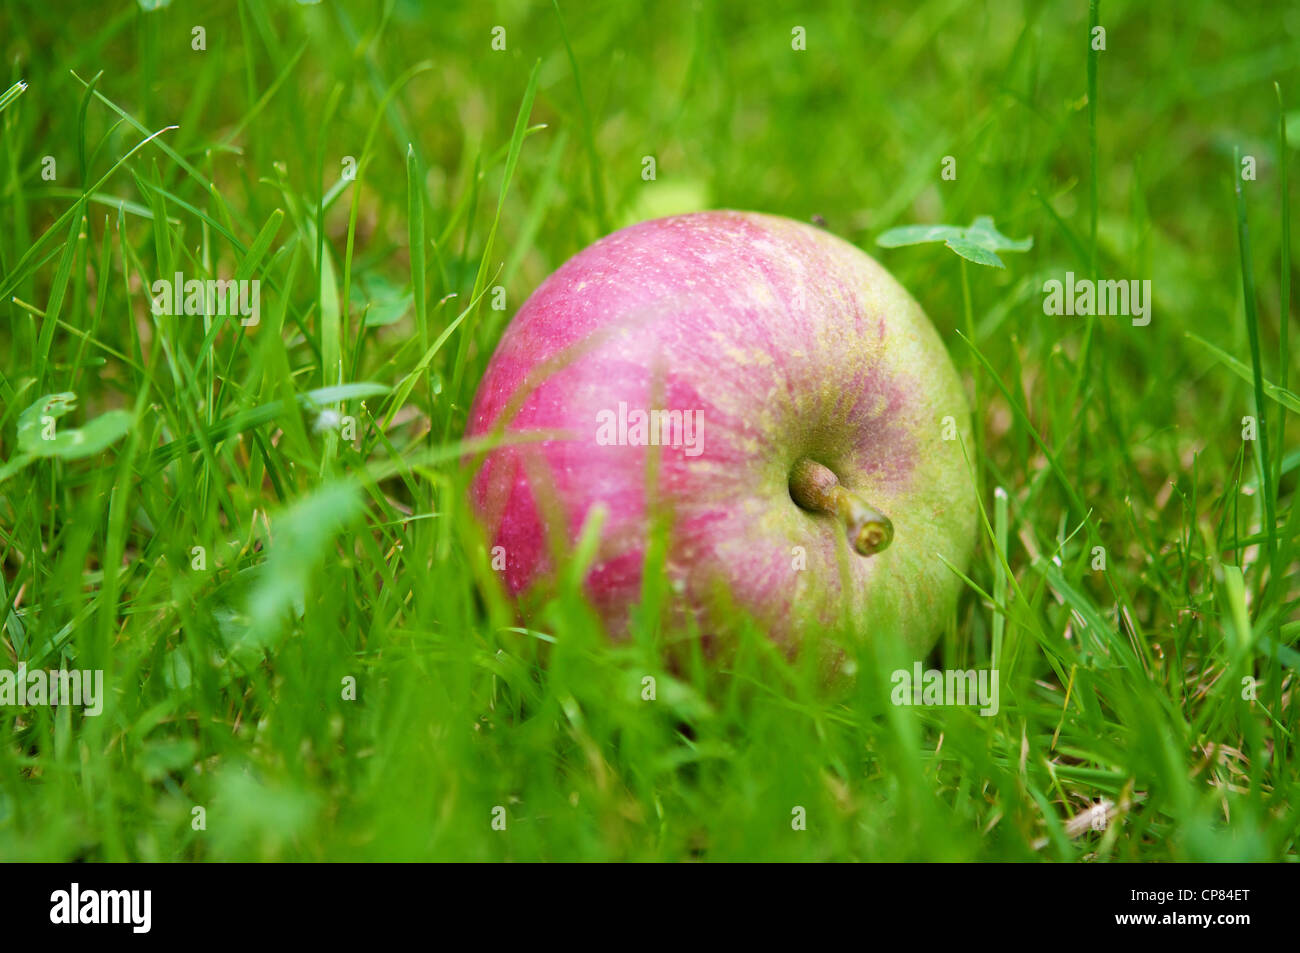 Apple tombé dans l'herbe Banque D'Images